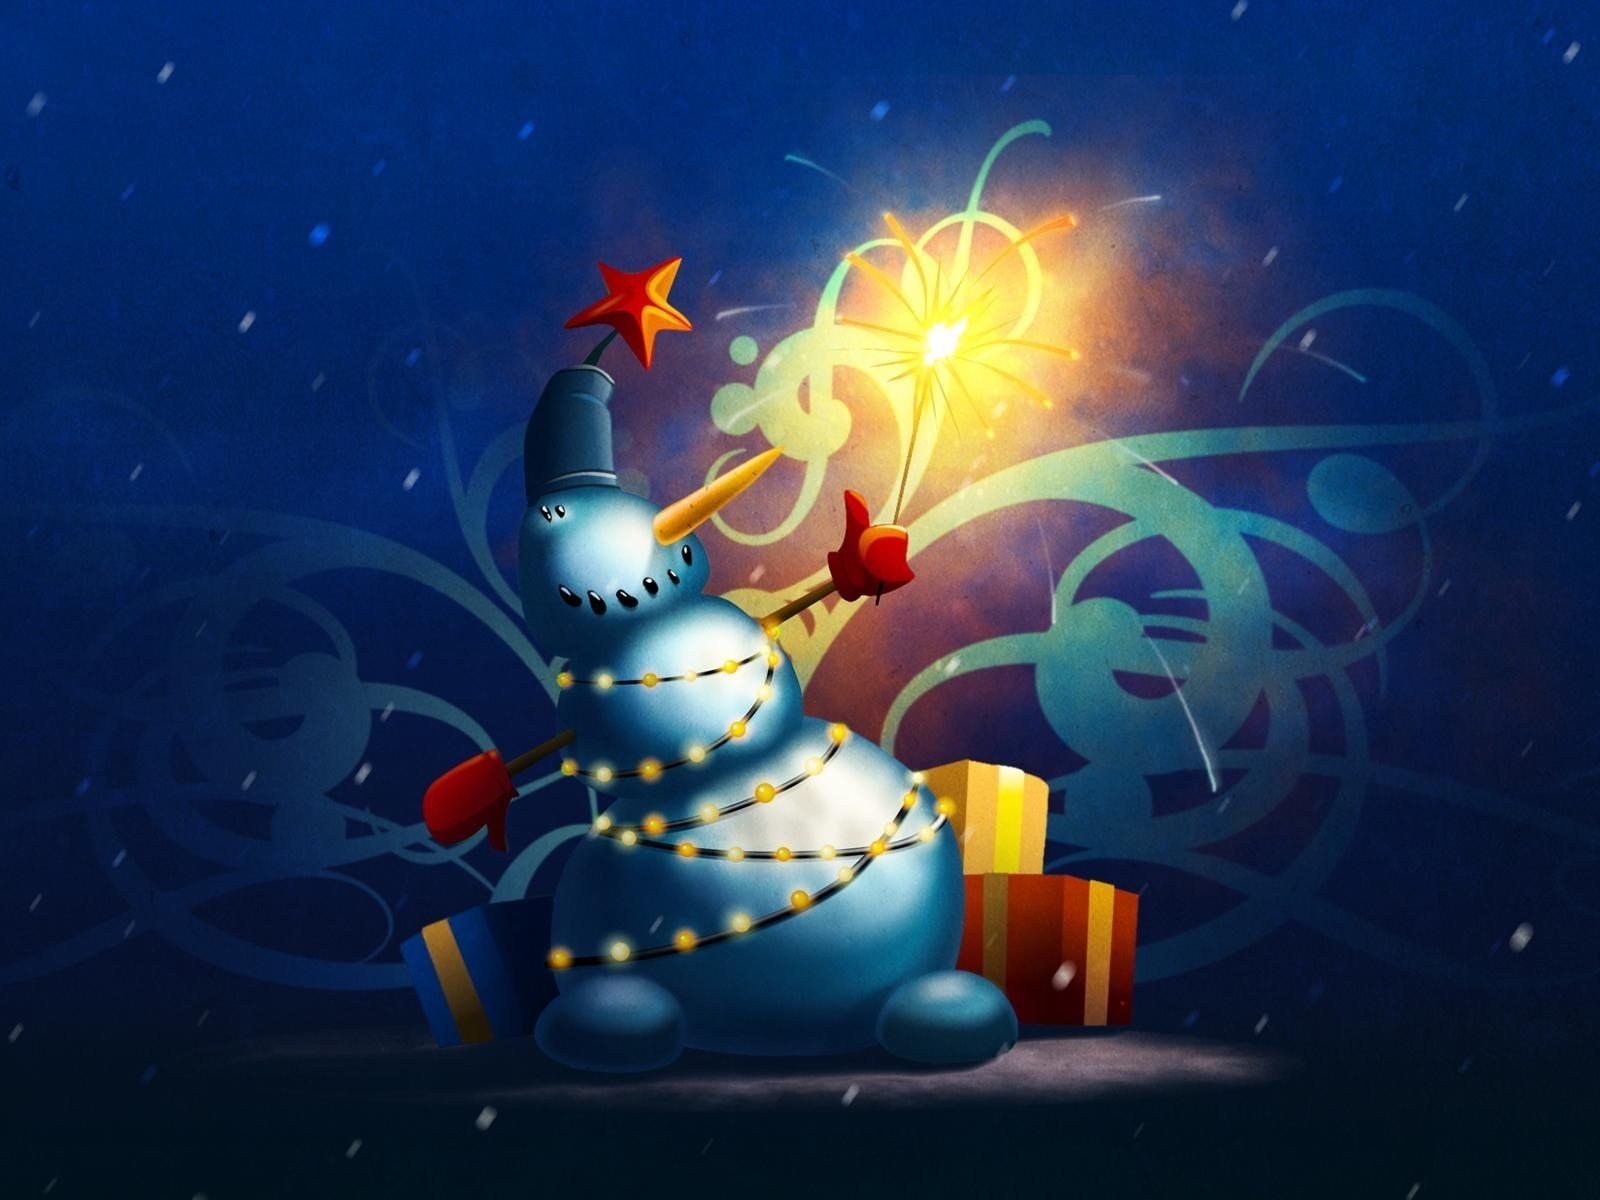 Скачать обои бесплатно Рождество (Christmas Xmas), Праздники, Новый Год (New Year), Рисунки картинка на рабочий стол ПК